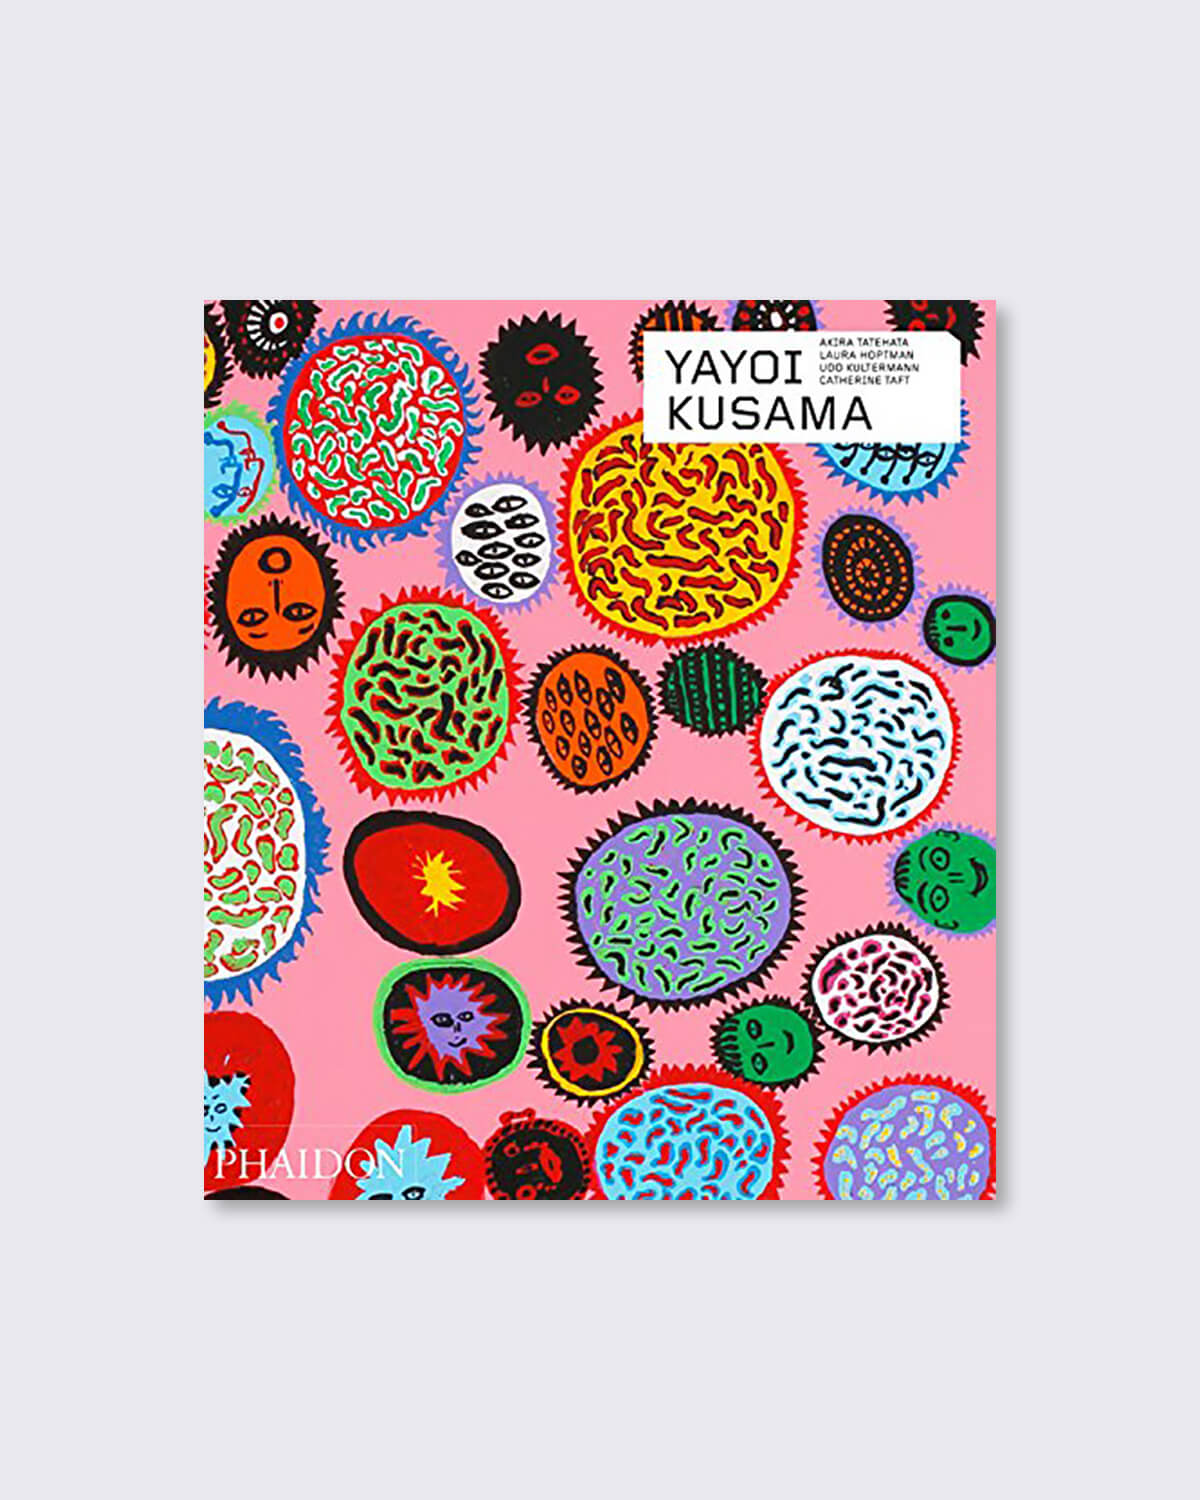 Yayoi Kusama: Revised & expanded edition